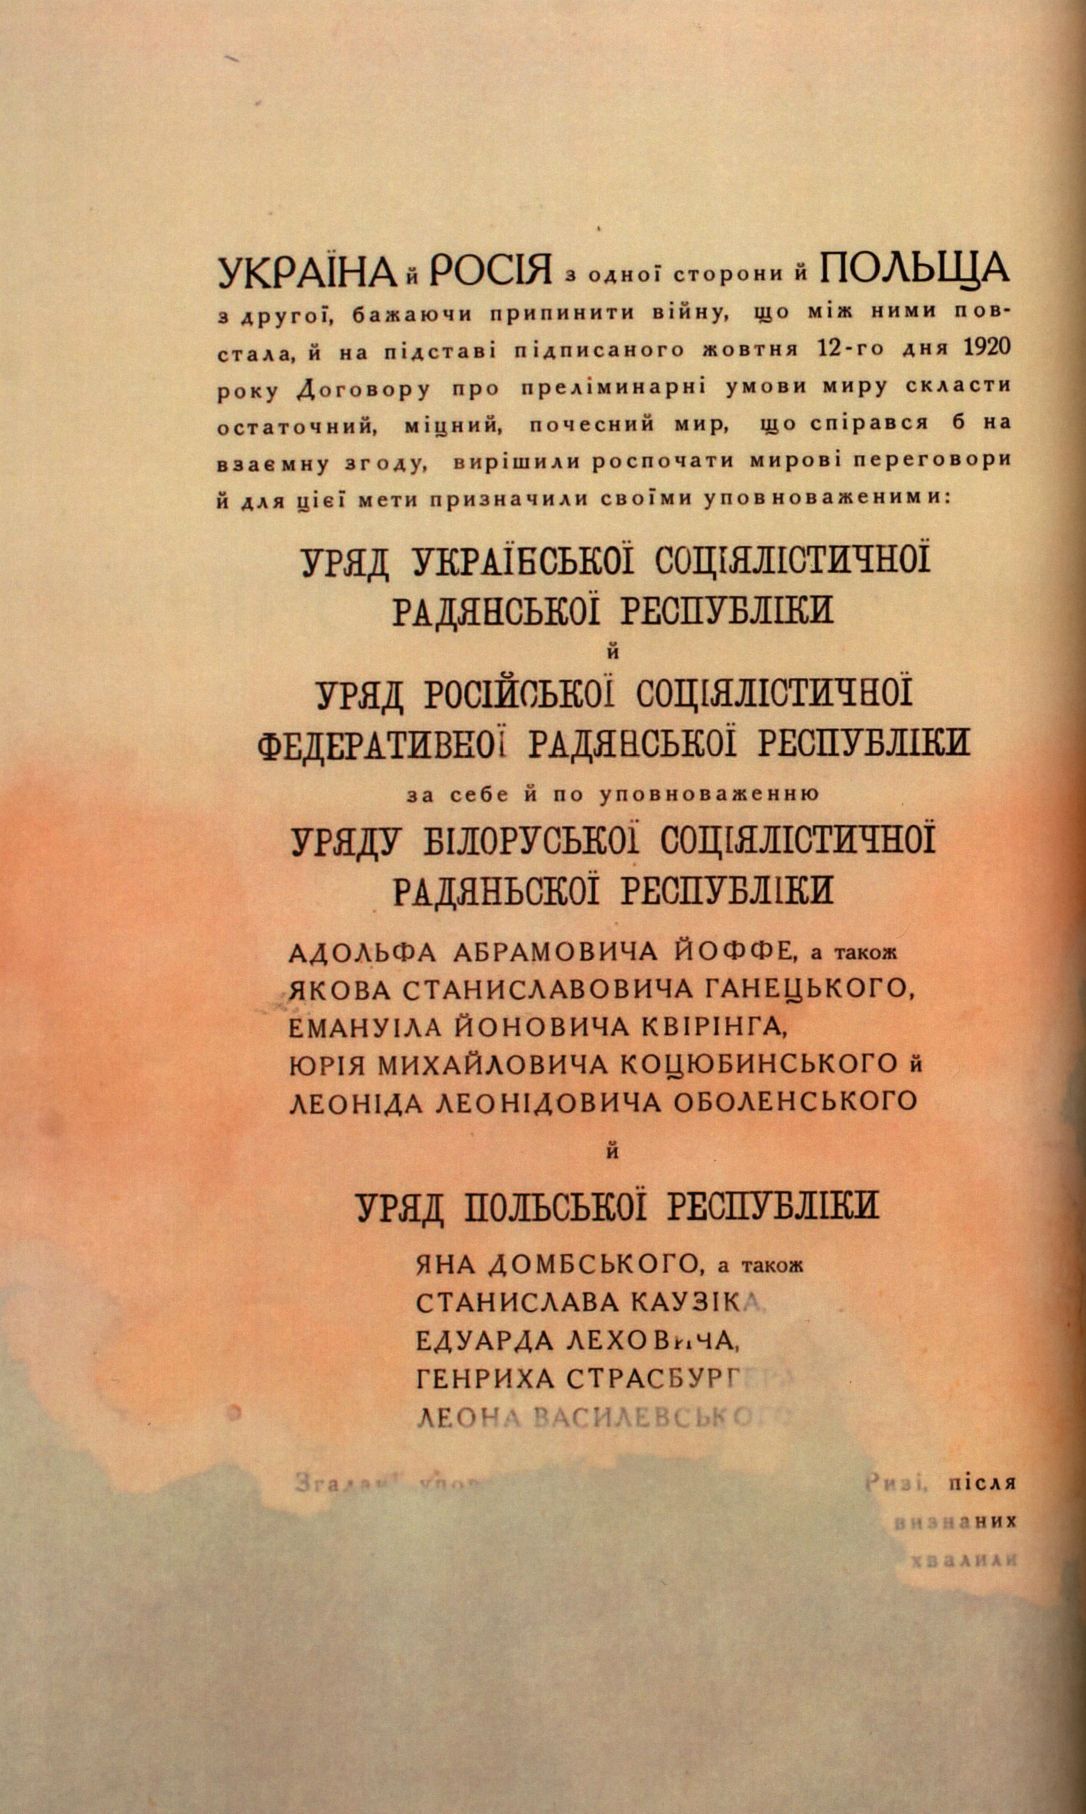 Traktat Pokoju między Polską a Rosją i Ukrainą podpisany w Rydze dnia 18 marca 1921 roku, s. 66, MSZ, sygn. 6739.